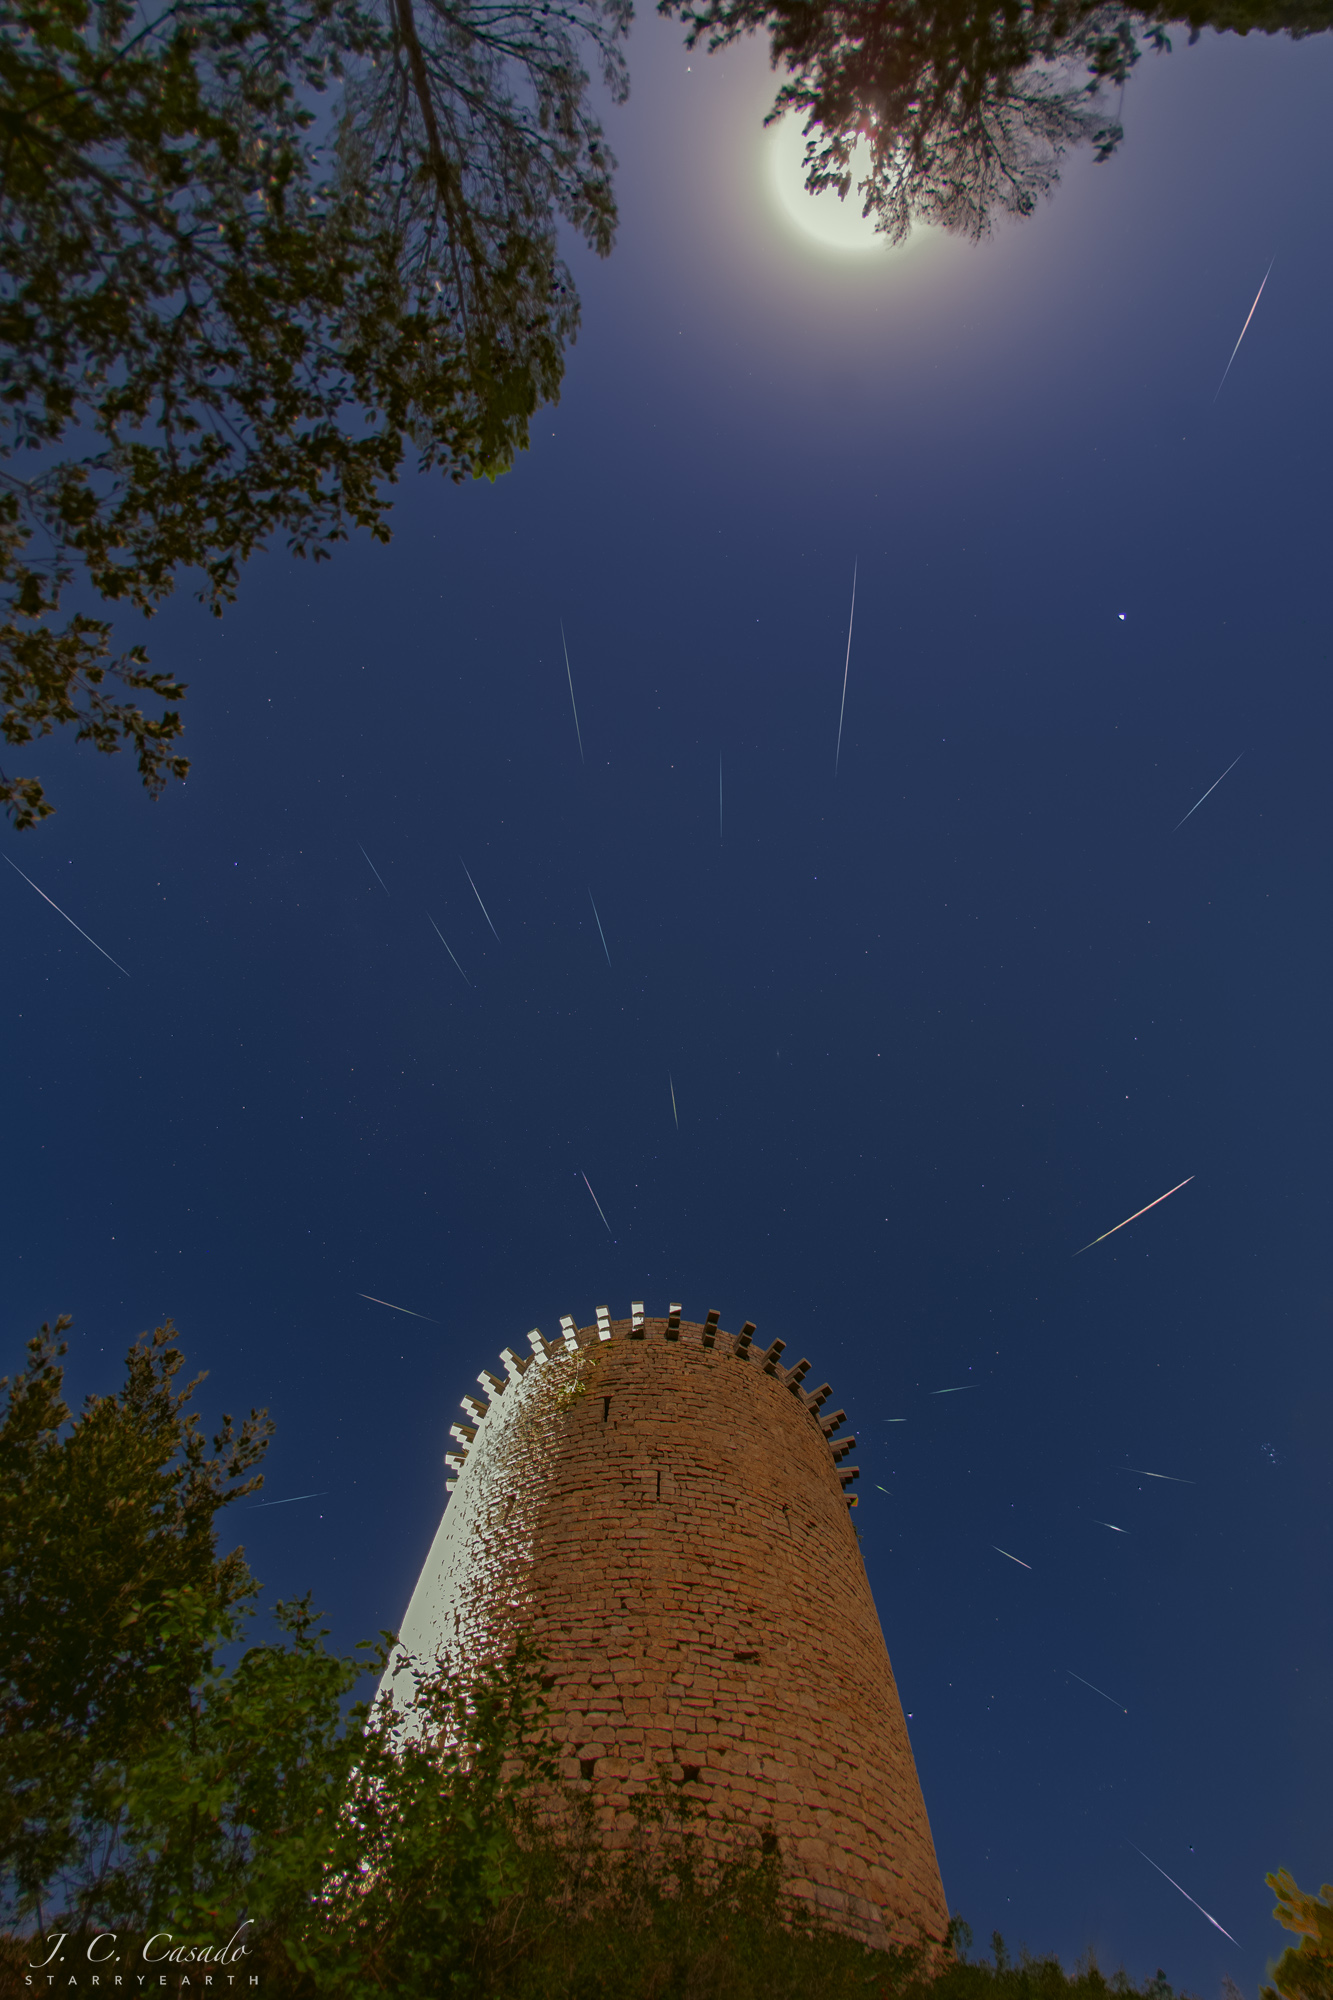 Hinter einem mittelalterlichen Turm in Sant Llorenç de la Muga in der spanischen Provinz Girona befindet sich der Radiant des Meteorstroms der Perseiden, oben leuchten der Vollmond und der Planet Saturn.